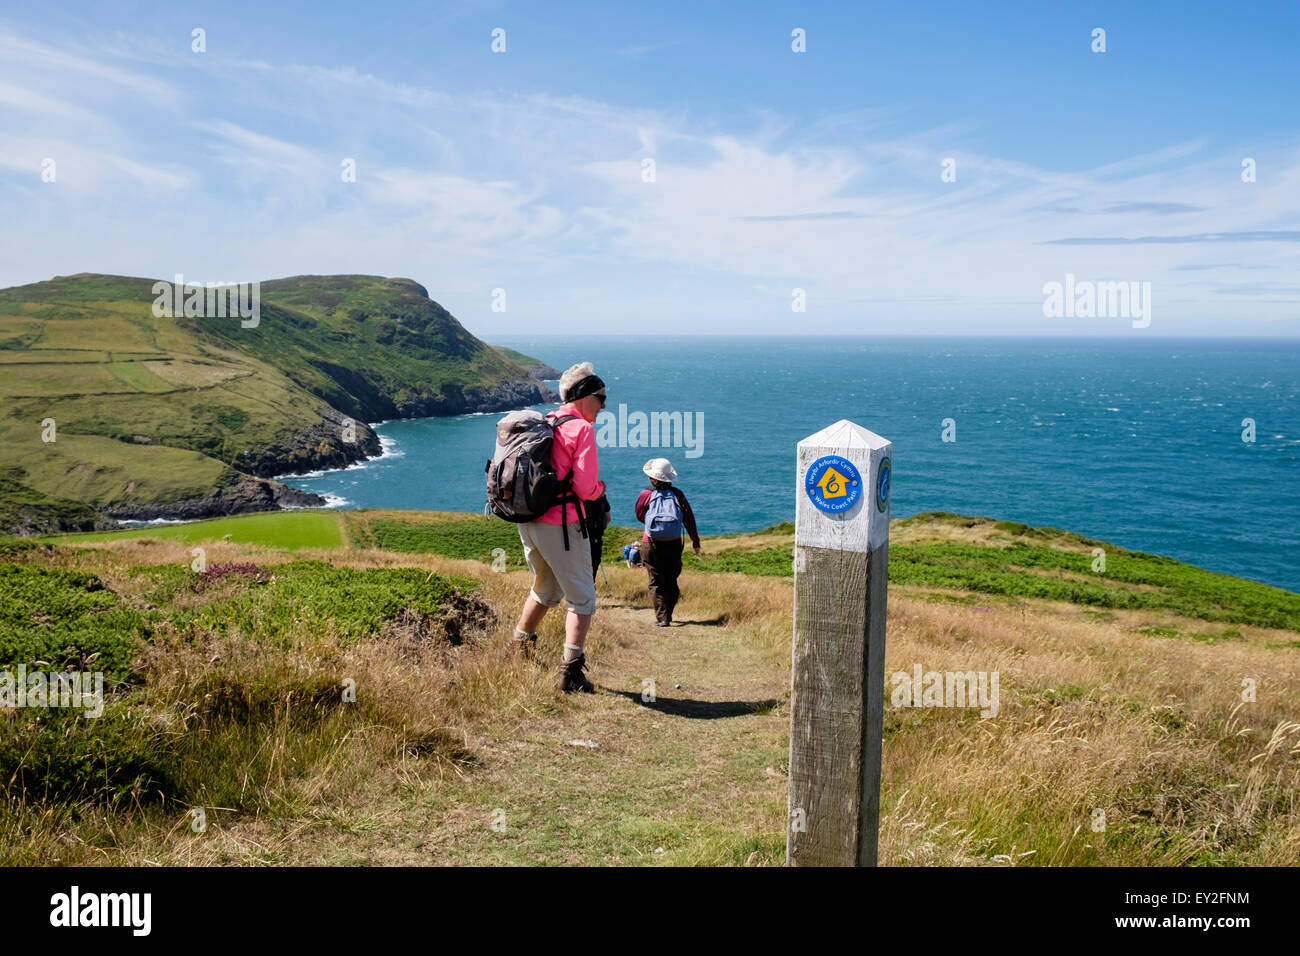 Les randonneurs randonnée sur Chemin La côte du Pays de Galles par sentier du littoral signe sur péninsule Llyen / Pen Llyn, Gwynedd, au nord du Pays de Galles, Royaume-Uni, Angleterre Banque D'Images